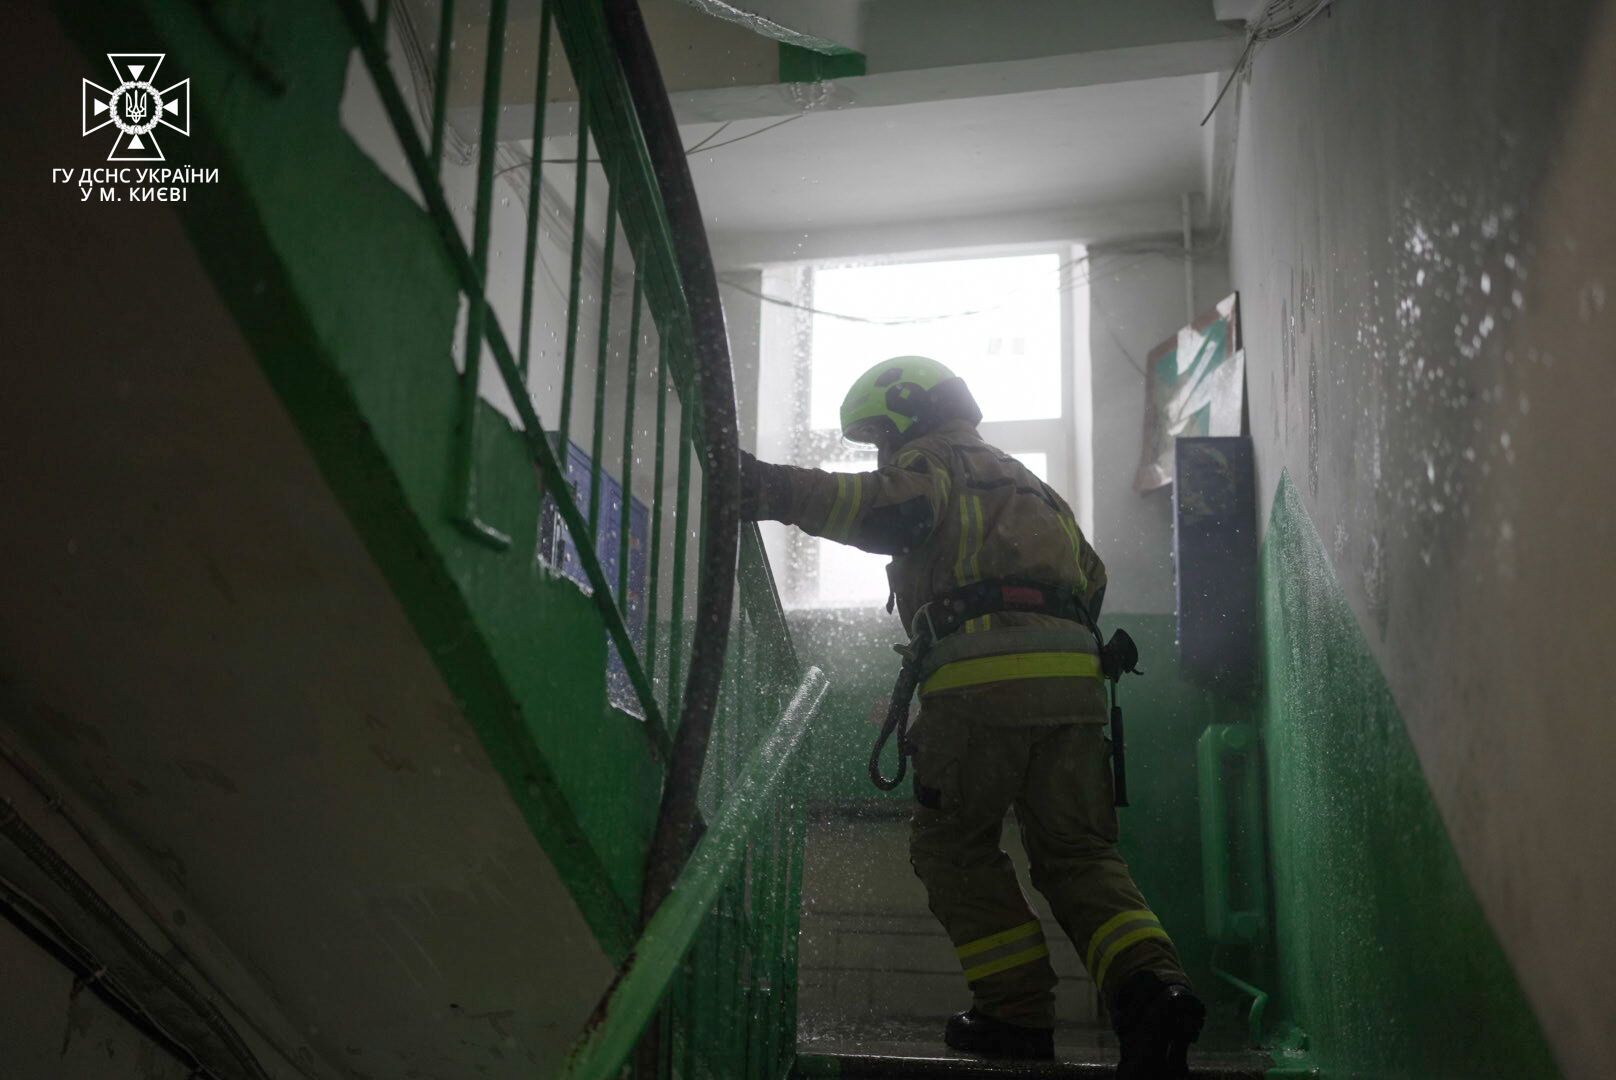 В Киеве произошел пожар в пятиэтажке: женщину и двоих детей госпитализировали. Фото